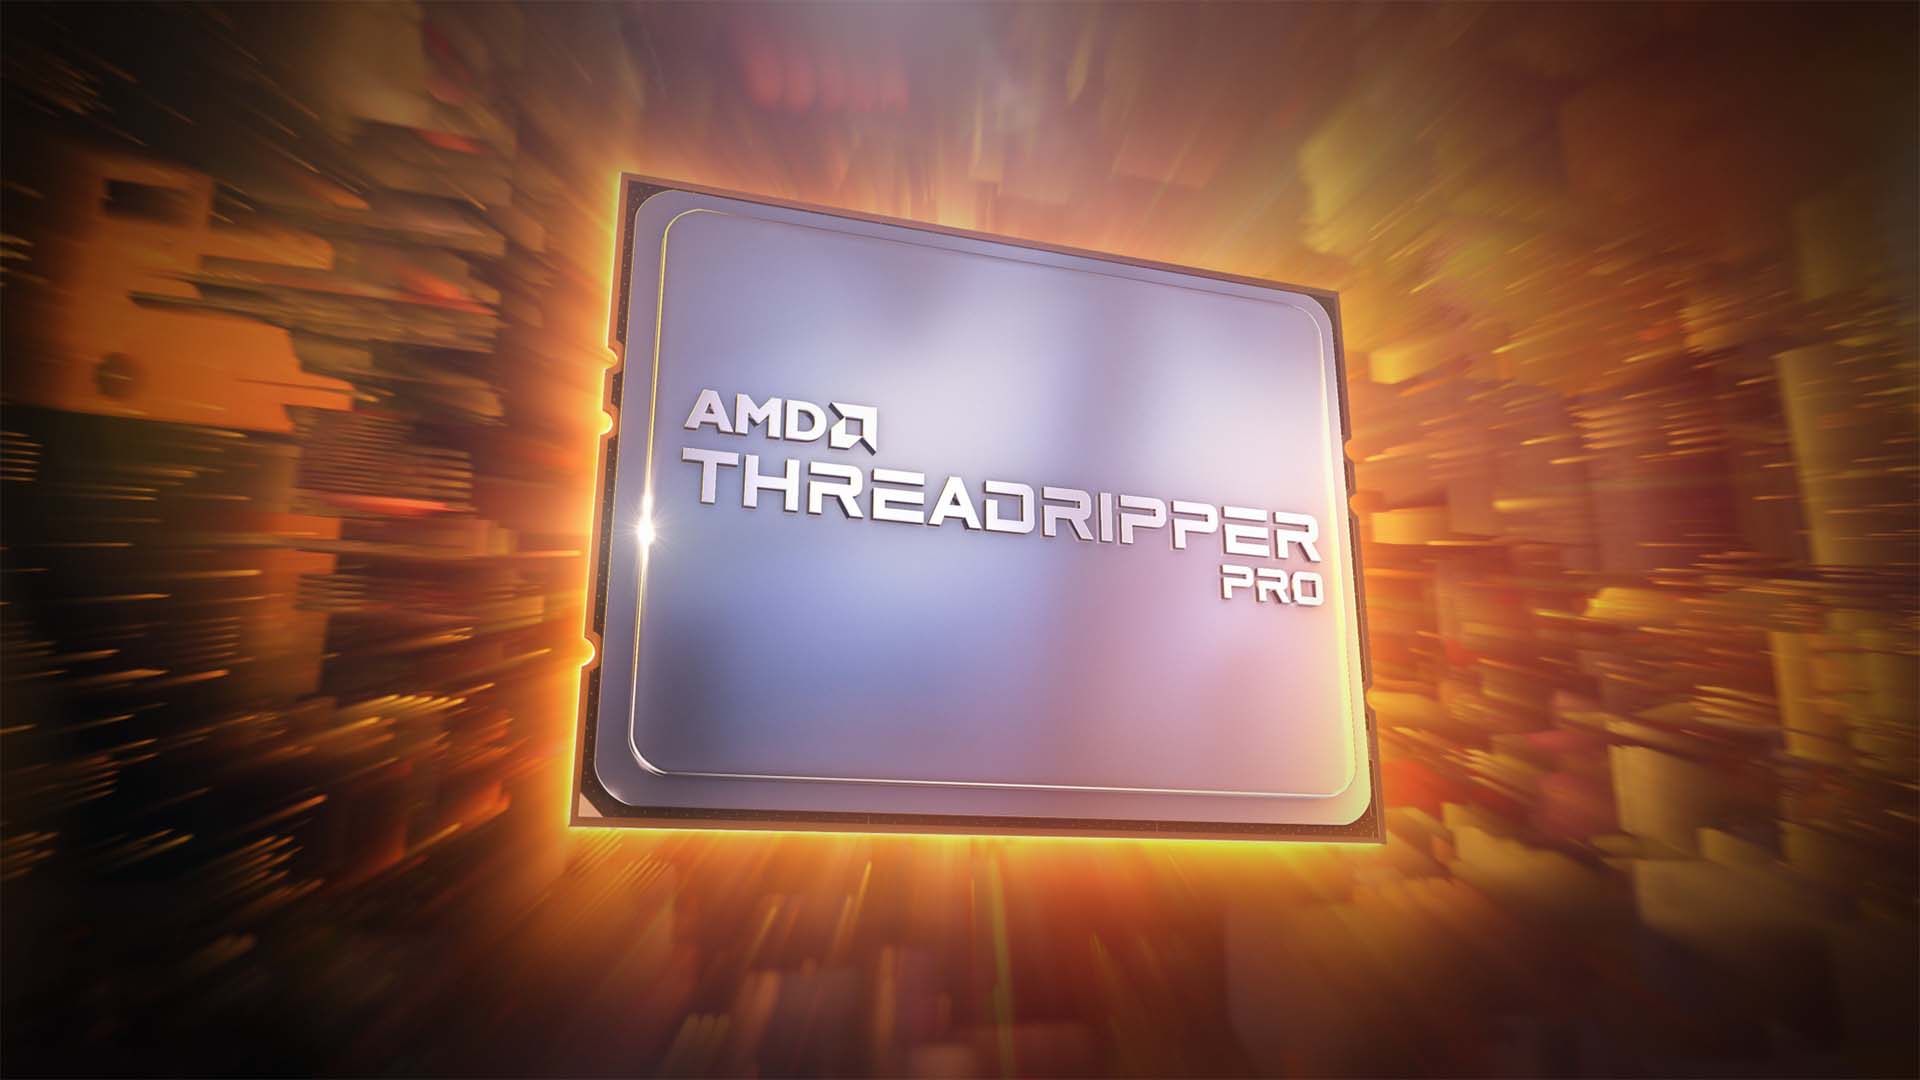 Image: AMD.